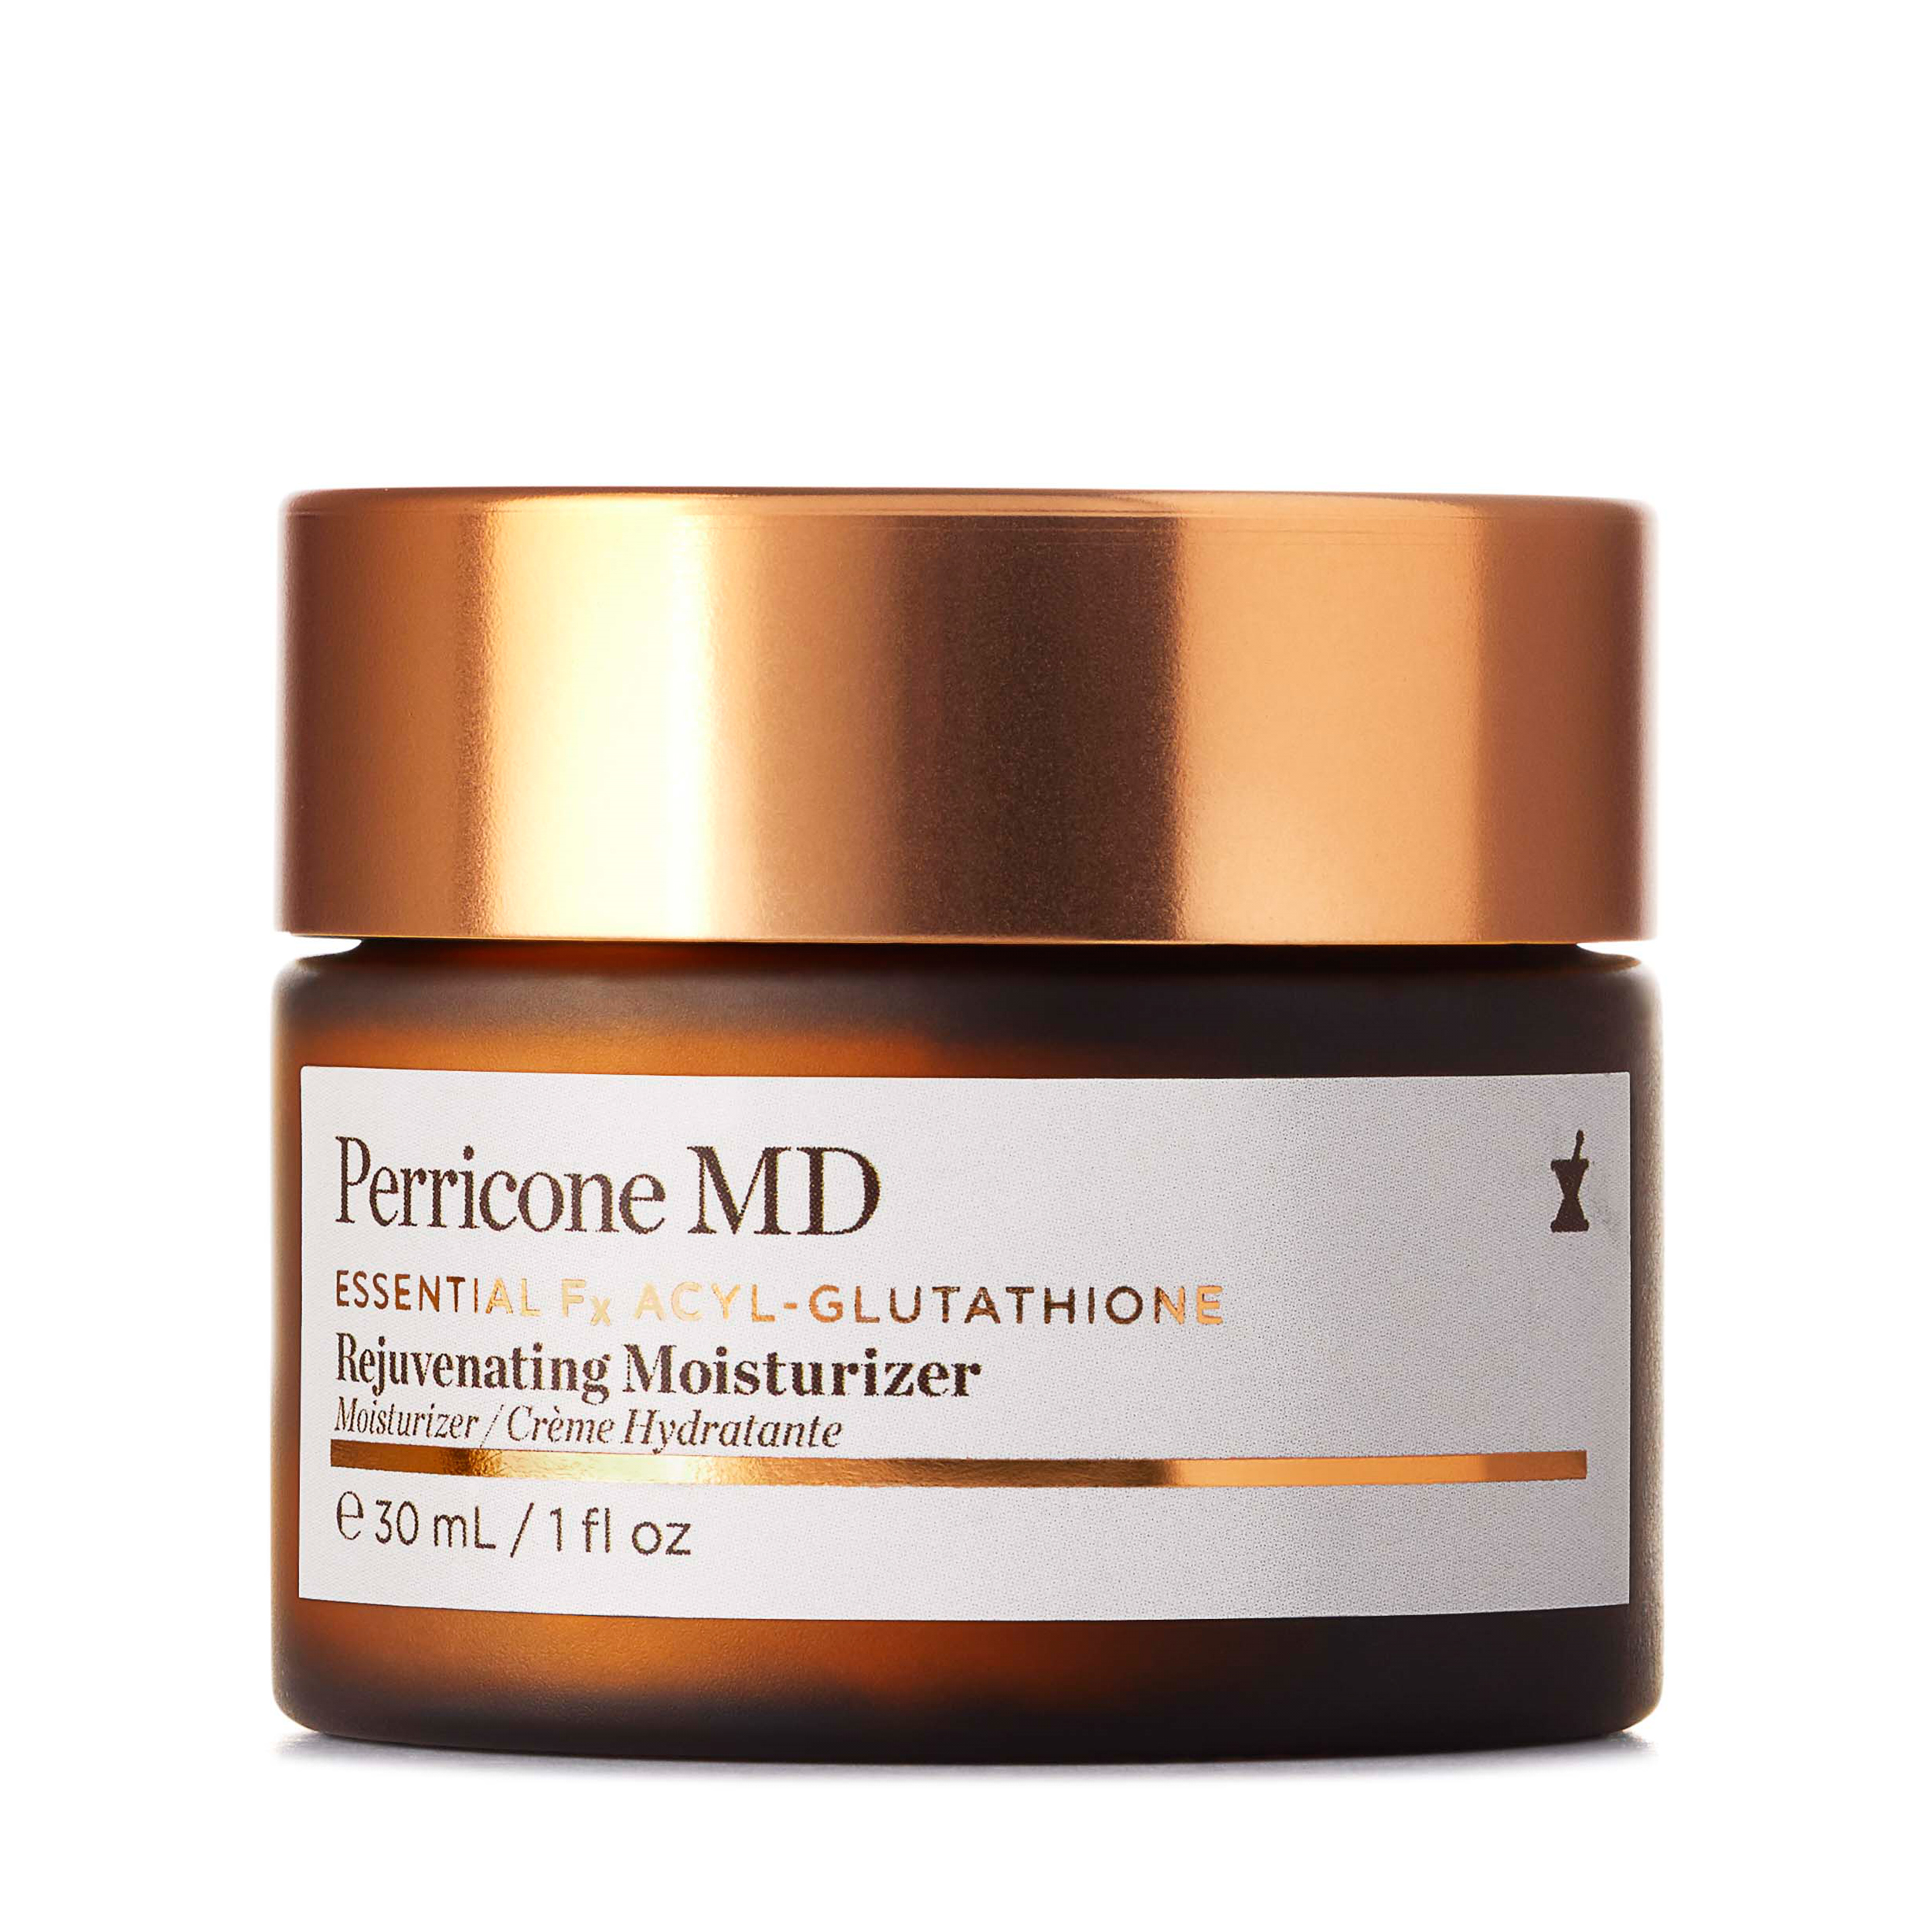 Perricone MD Perricone MD Восстанавливающий увлажняющий крем для лица Essential Fx Acyl-Glutathione 30 мл от Foambox